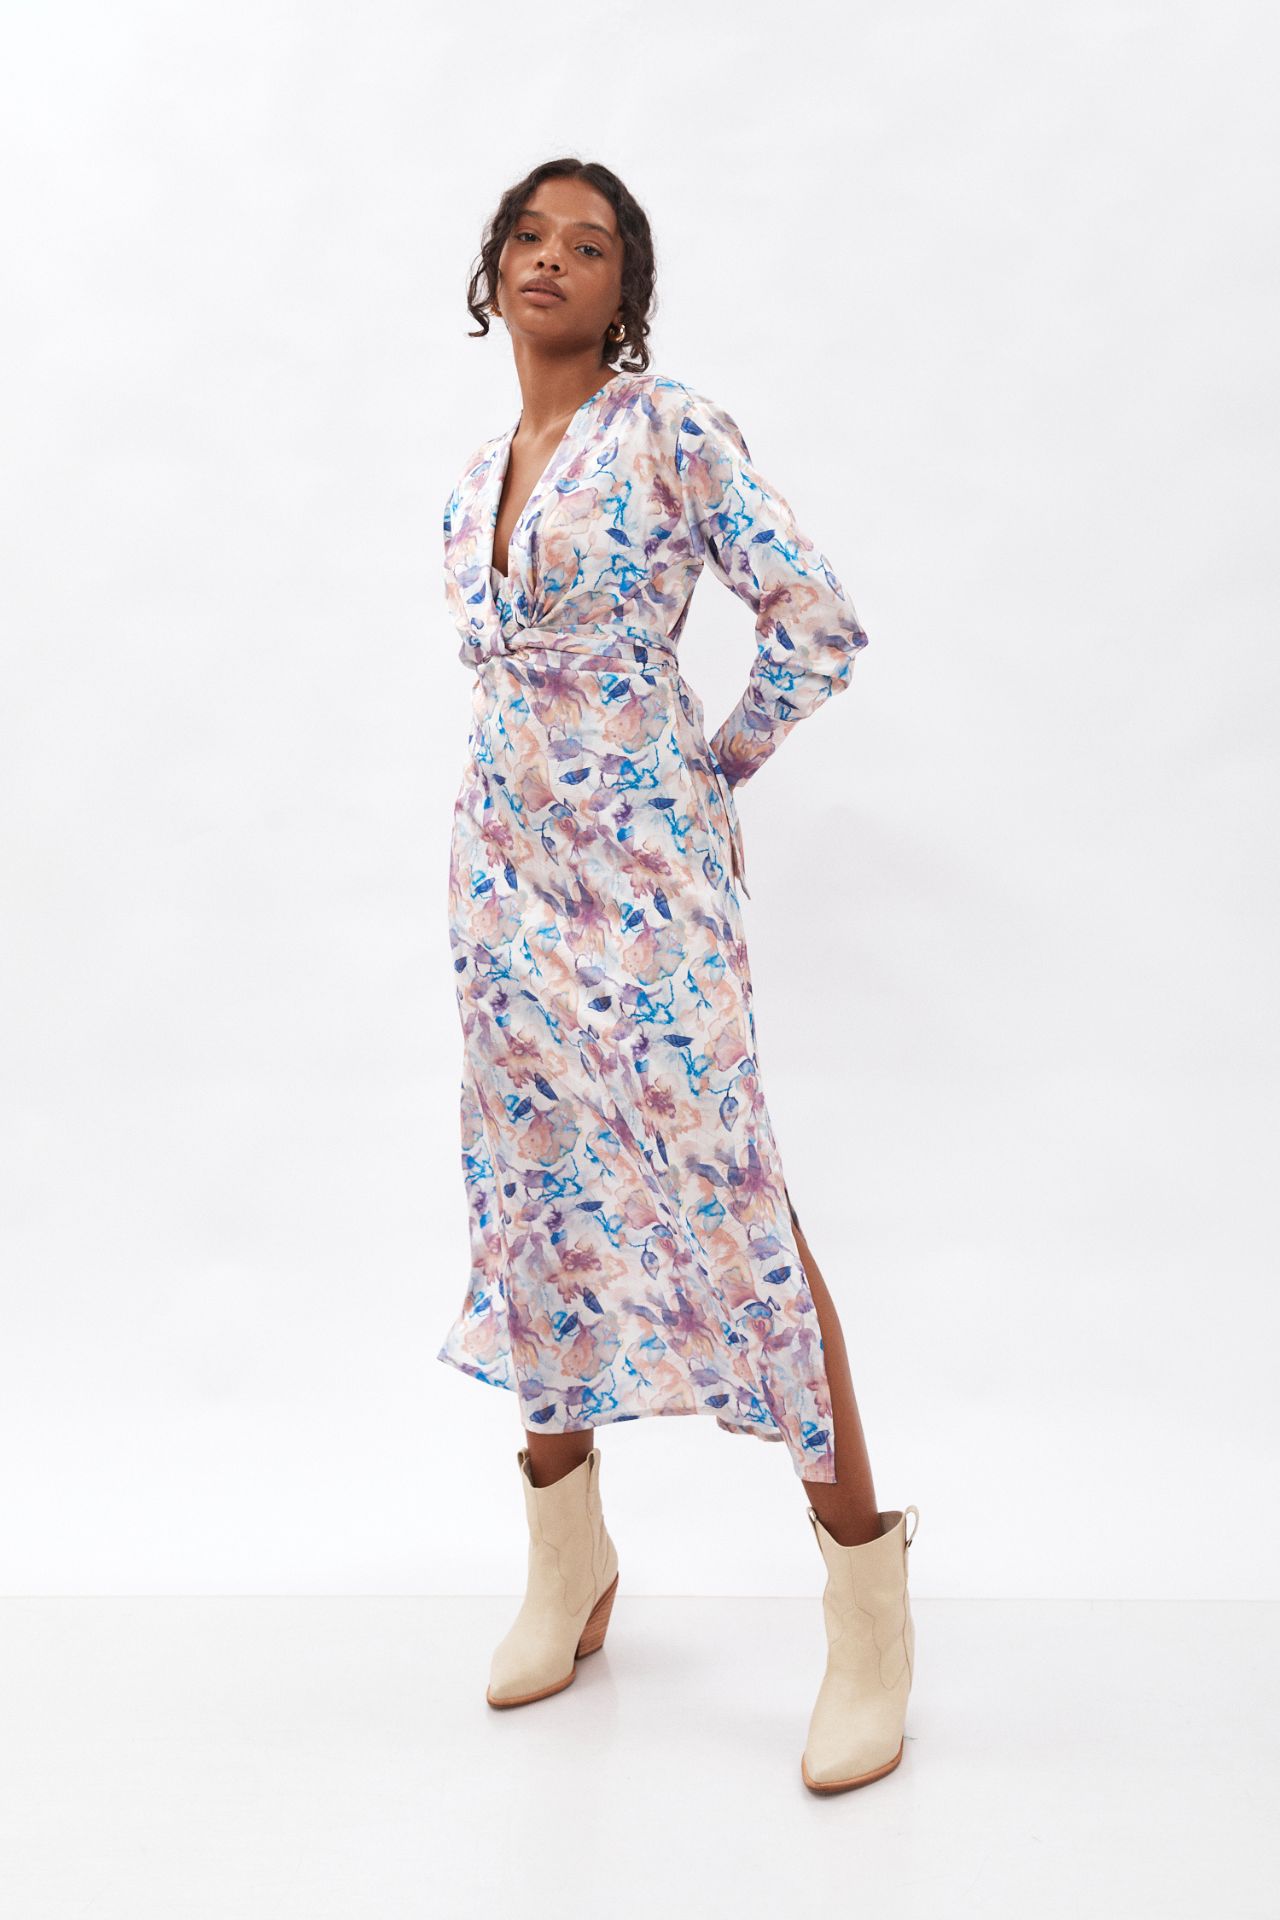 Vestido de manga larga multifuncional confeccionado en materiales 100% reciclados con un estampado único.
